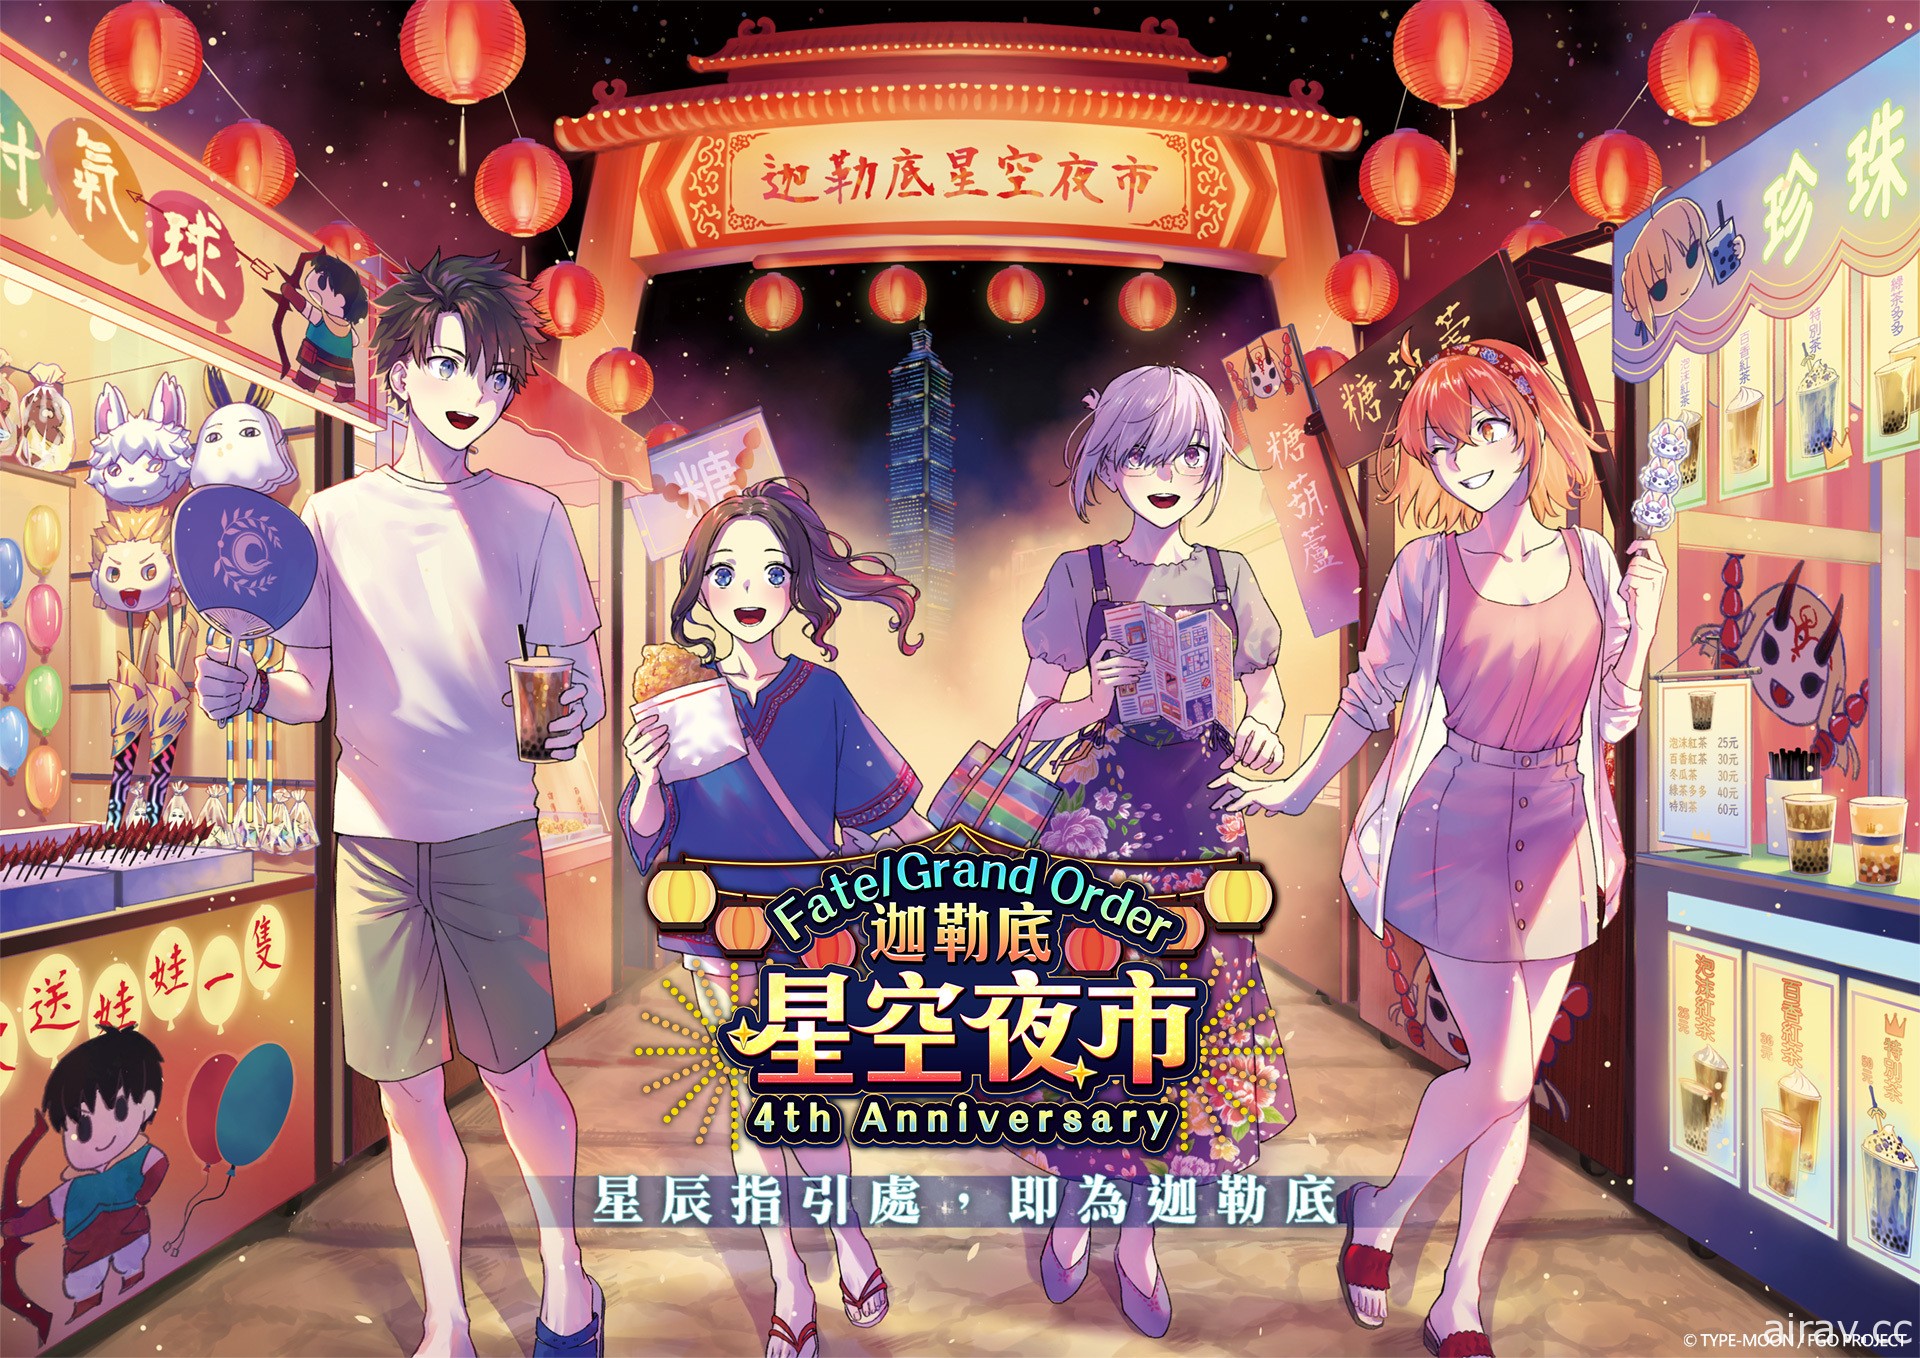 《Fate/Grand Order》繁中版四週年慶典 5 月登場 攜手台灣夜市推出一系列活動